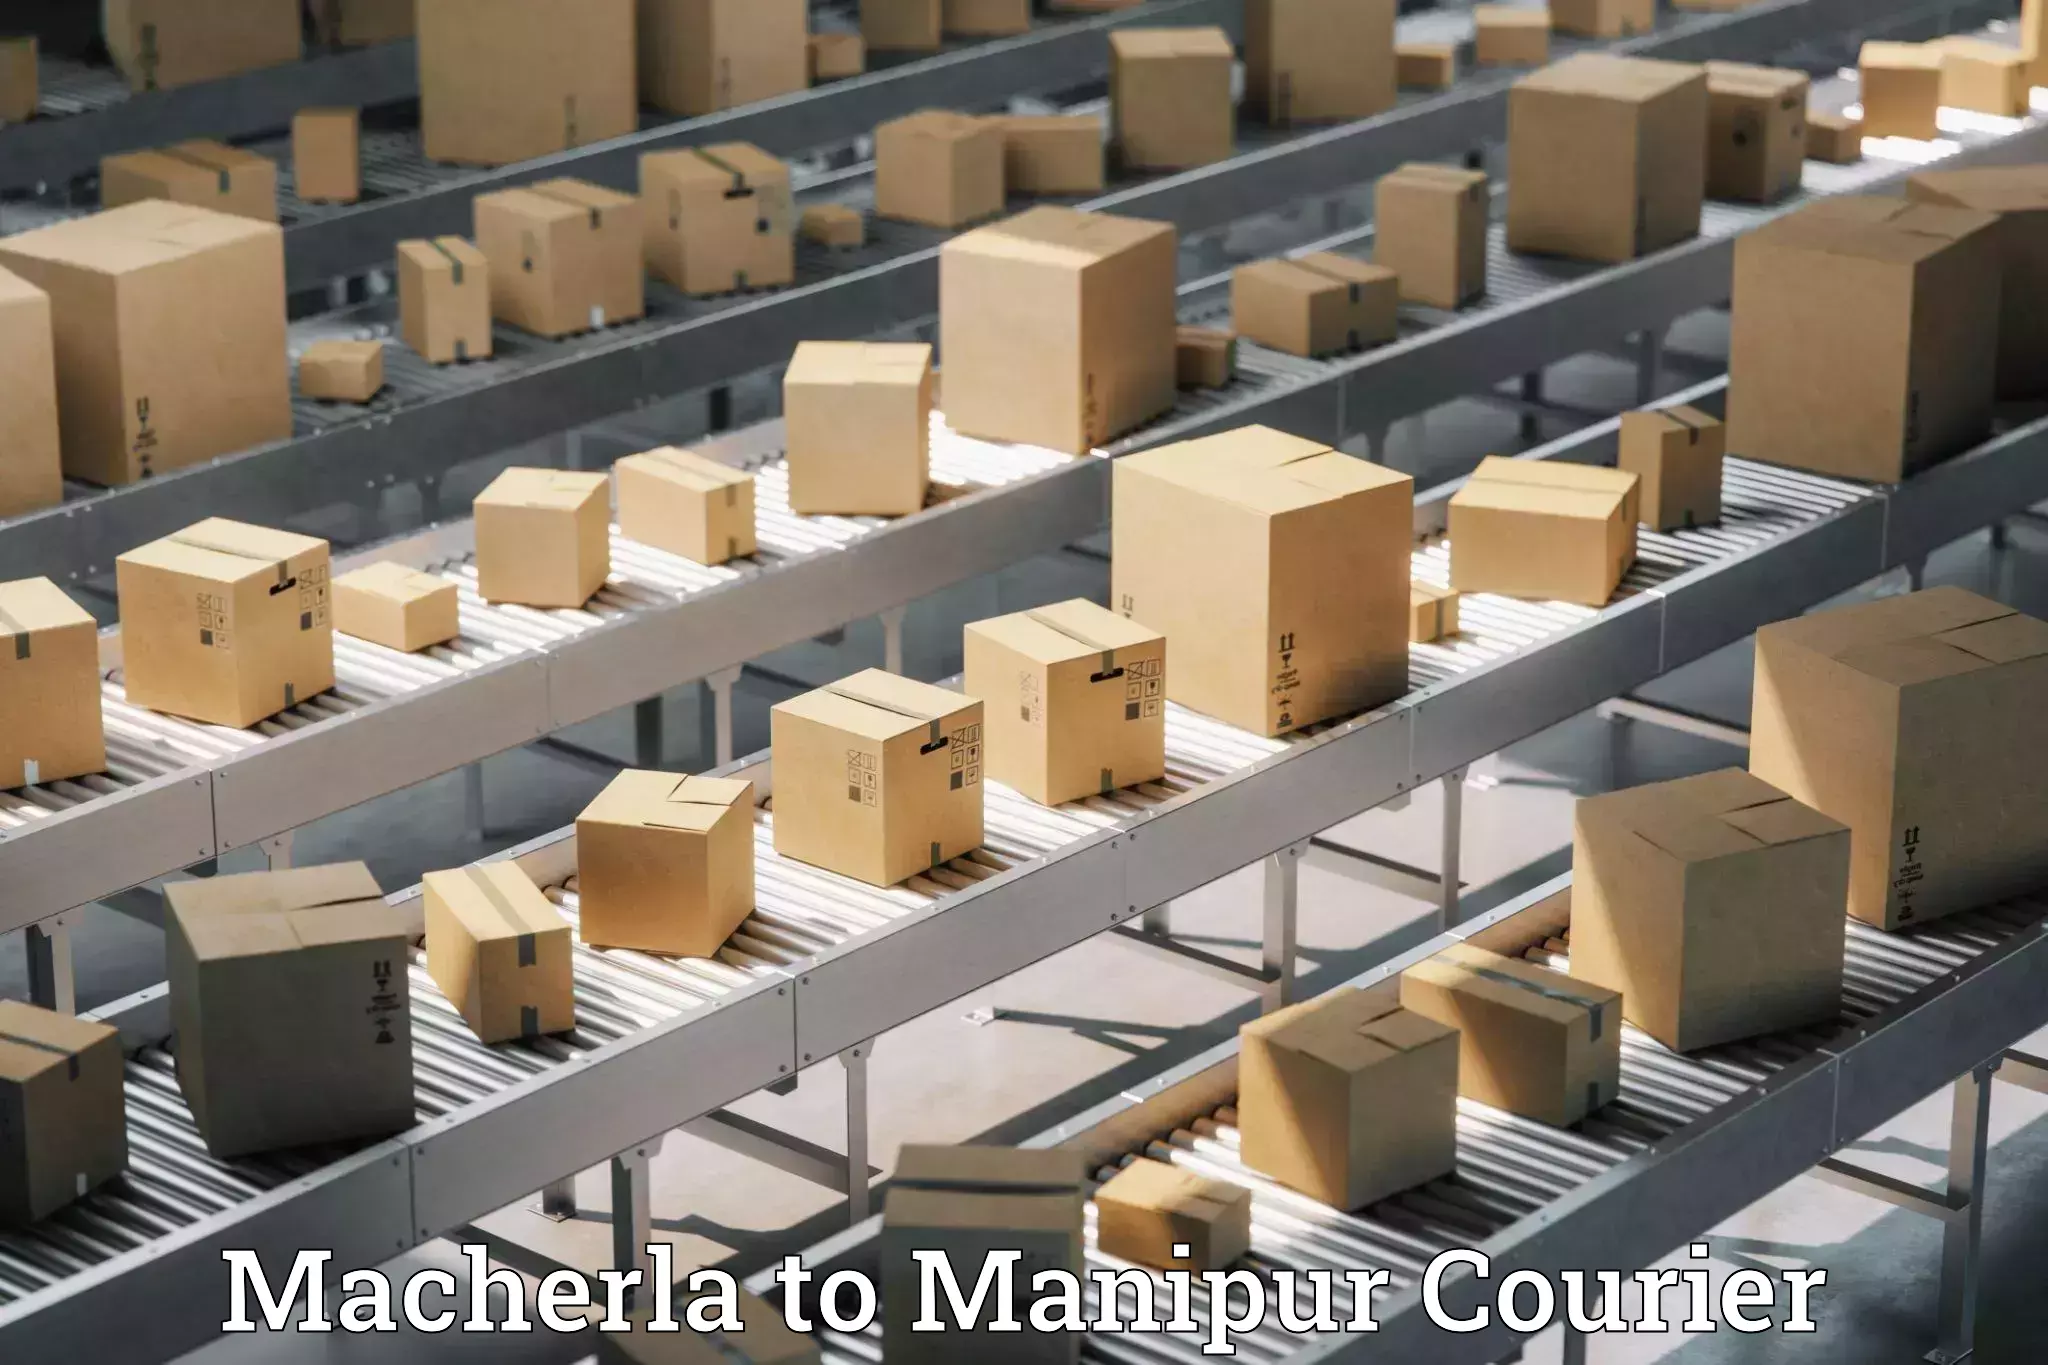 Urgent courier needs Macherla to Manipur